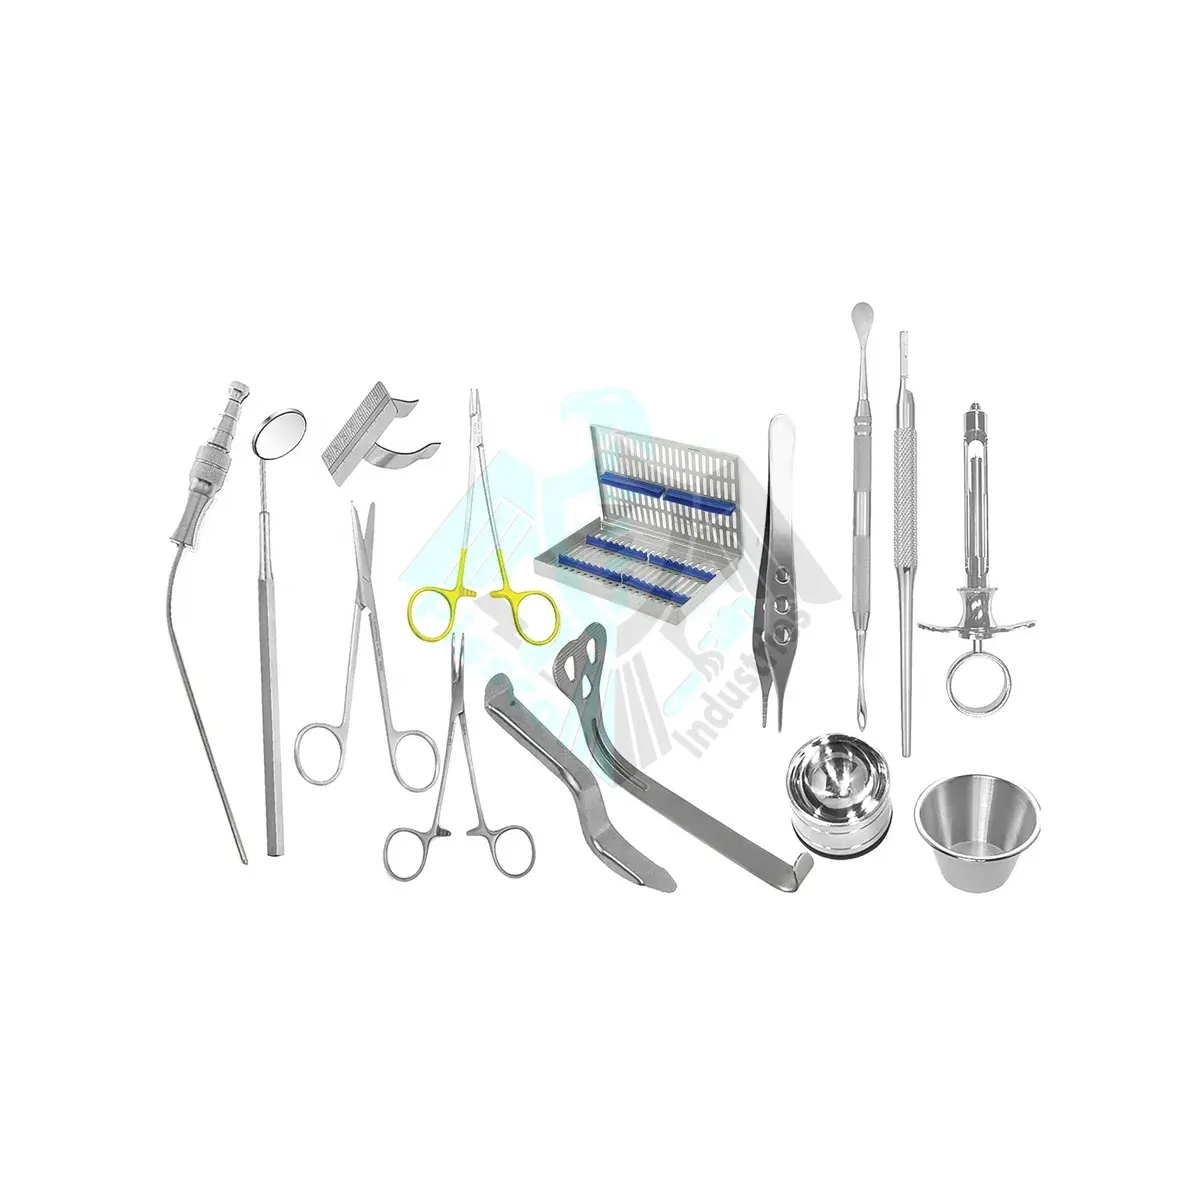 Fornitore all'ingrosso Pissco per Kit di strumenti per chirurgia implantare dentale con il proprio marchio